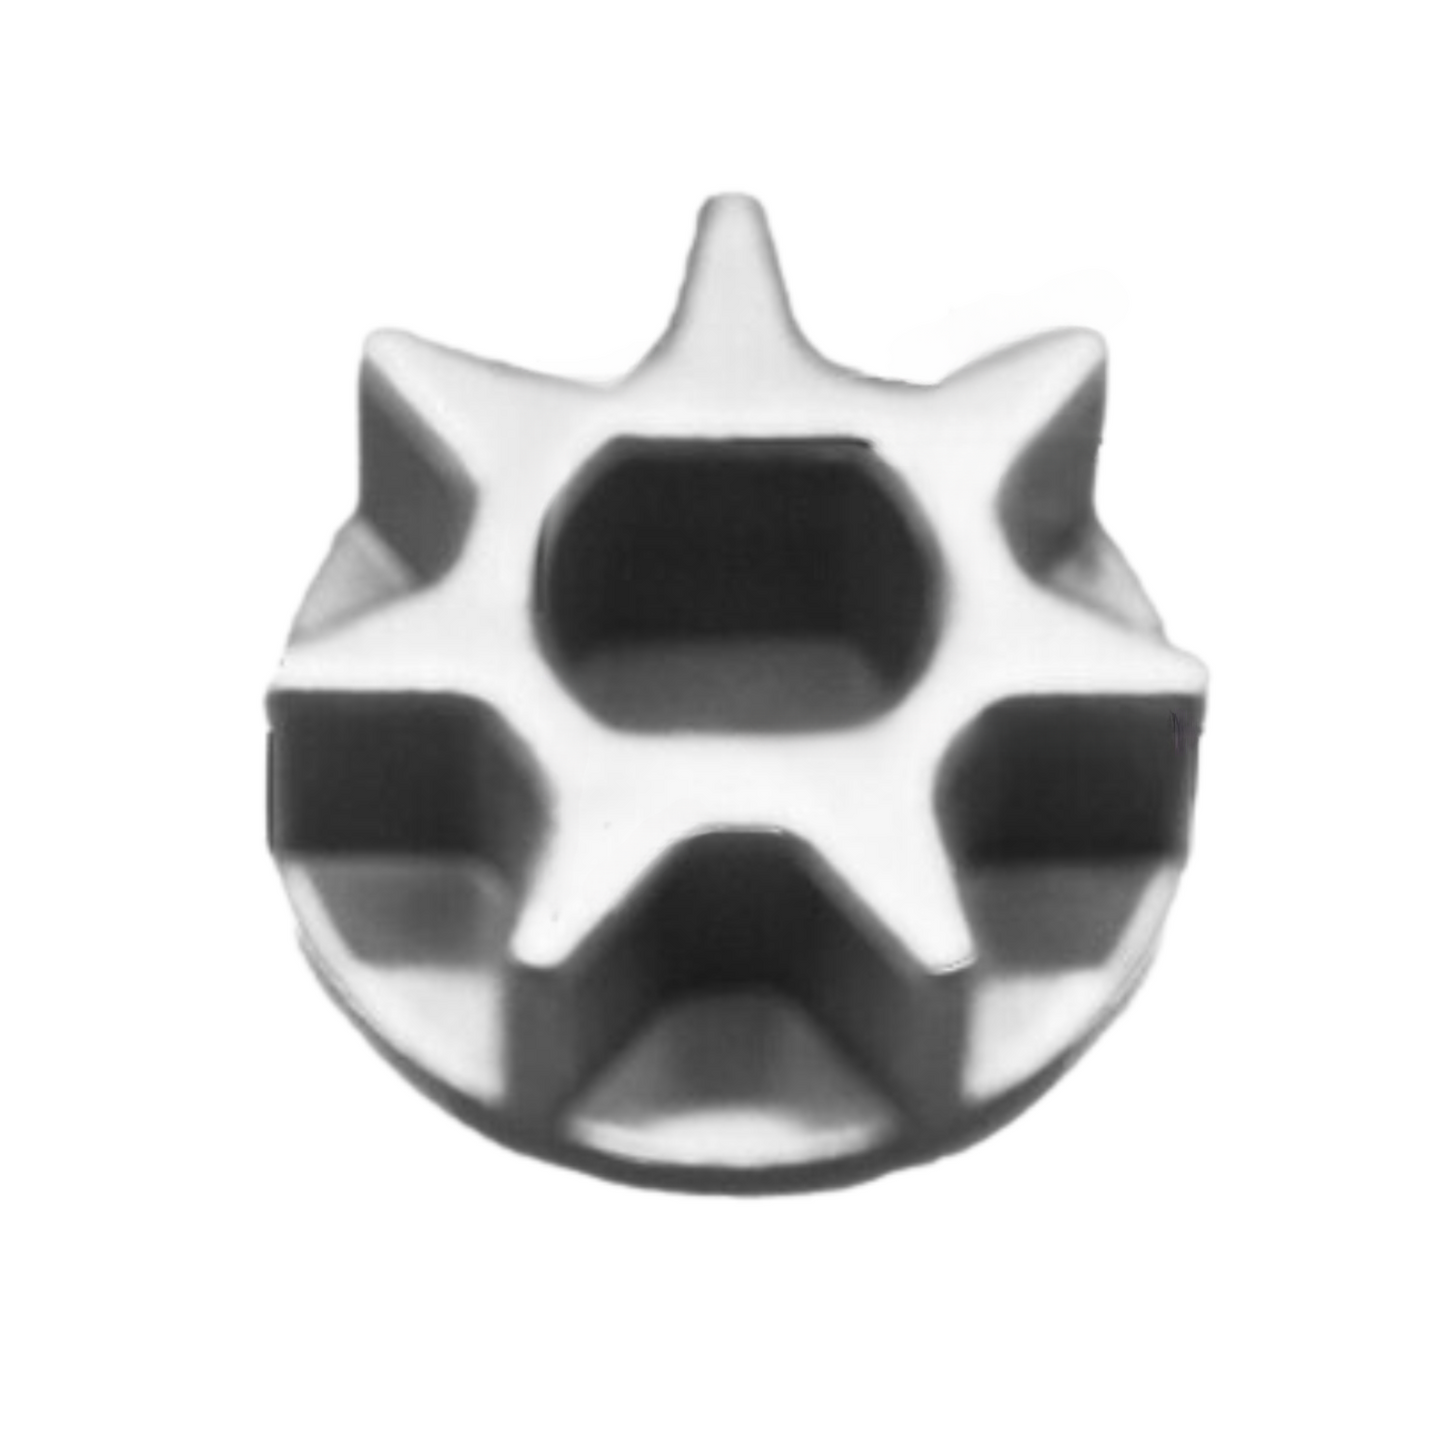 Pignon de tronçonneuse pour tronçonneuse E 5016-6018 3-6 dents 9x12 -8x10 -10 -14 -16mm-5-pk